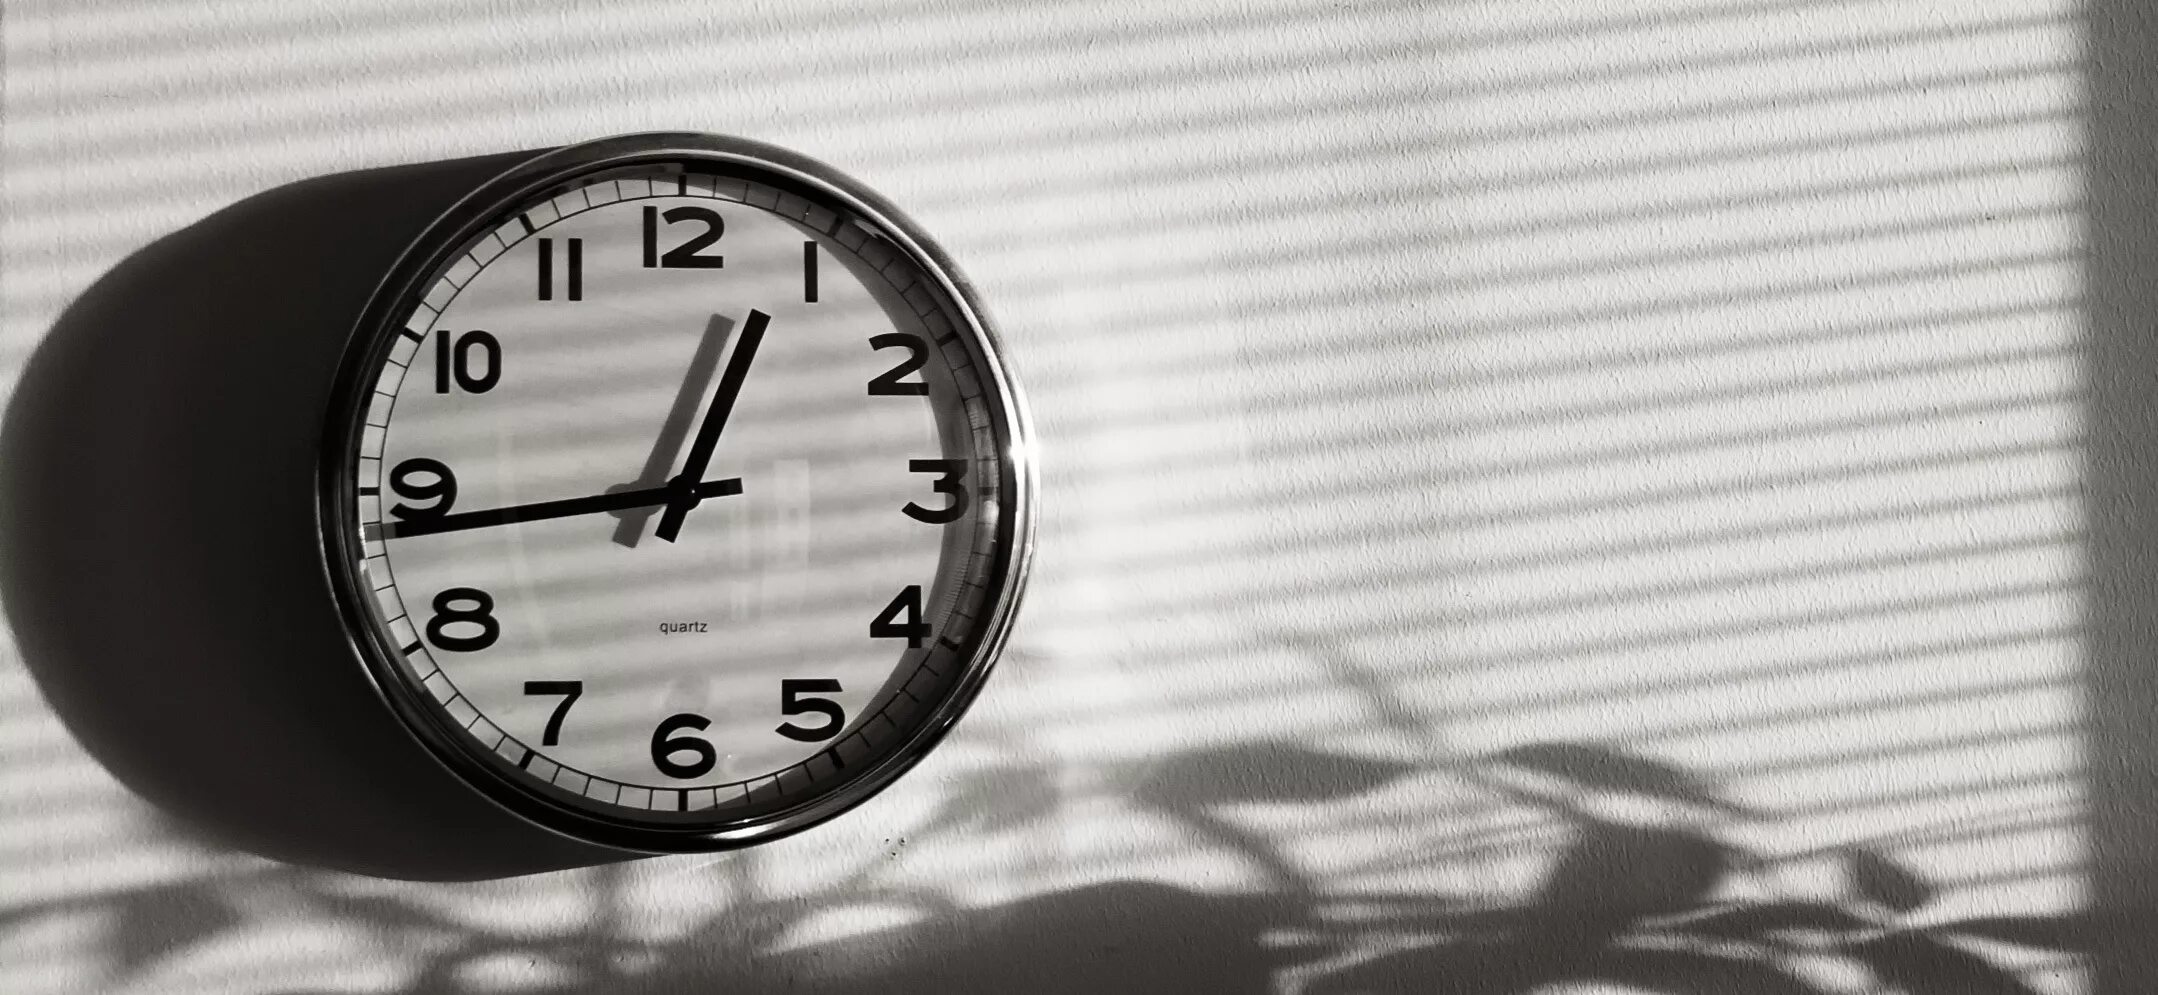 Картинки 1 час. Часы и время. Часы 1 минута. Часы 1 час ночи. Часы пятнадцать минут.